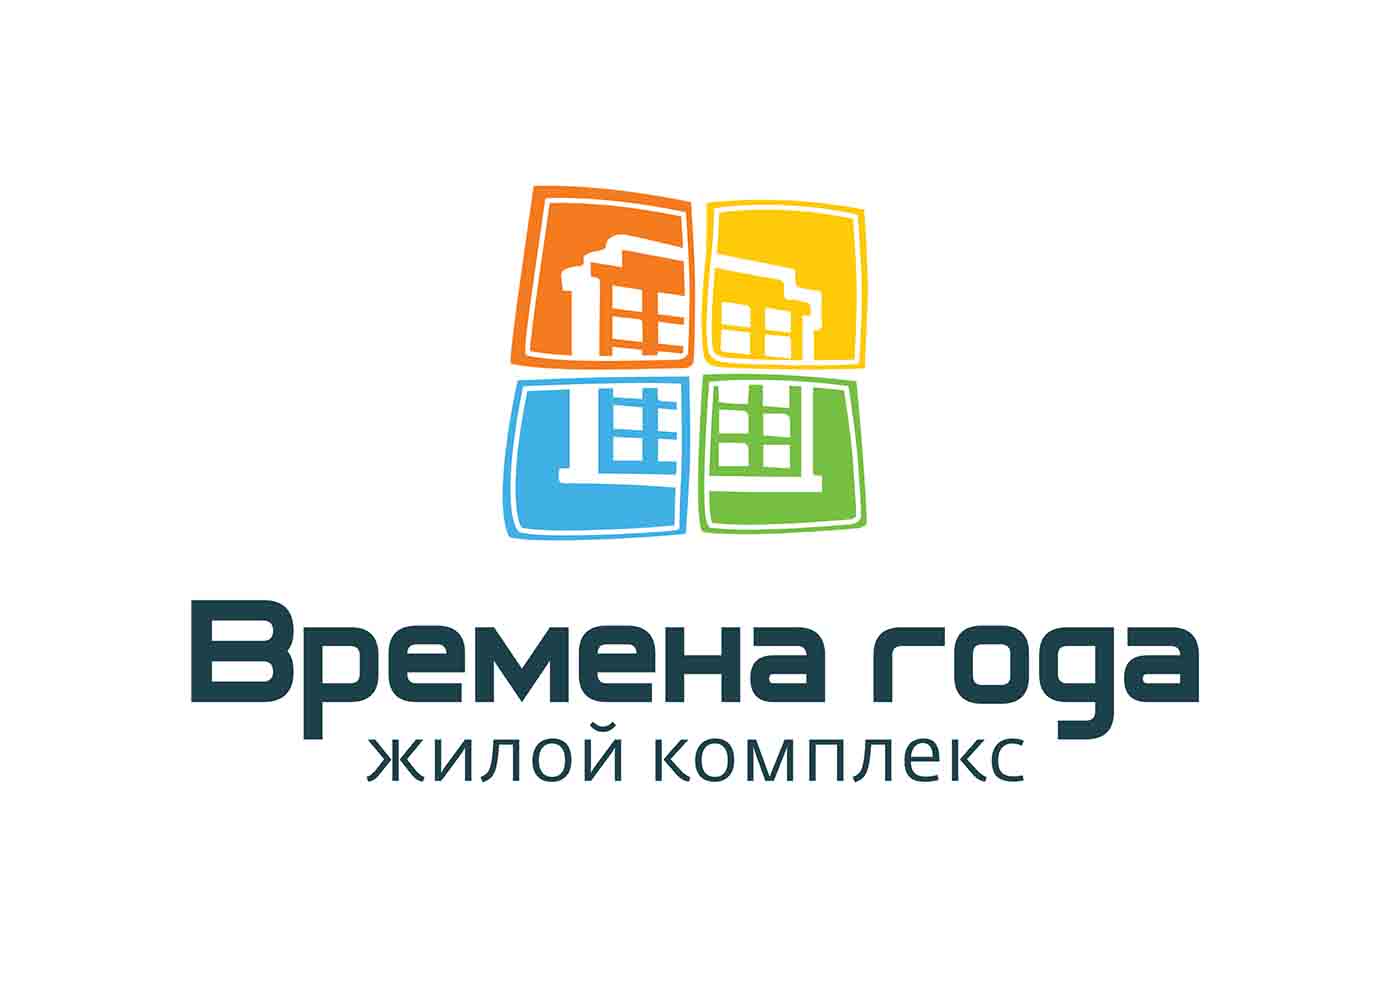 logo_zhk_vremena_goda.jpg